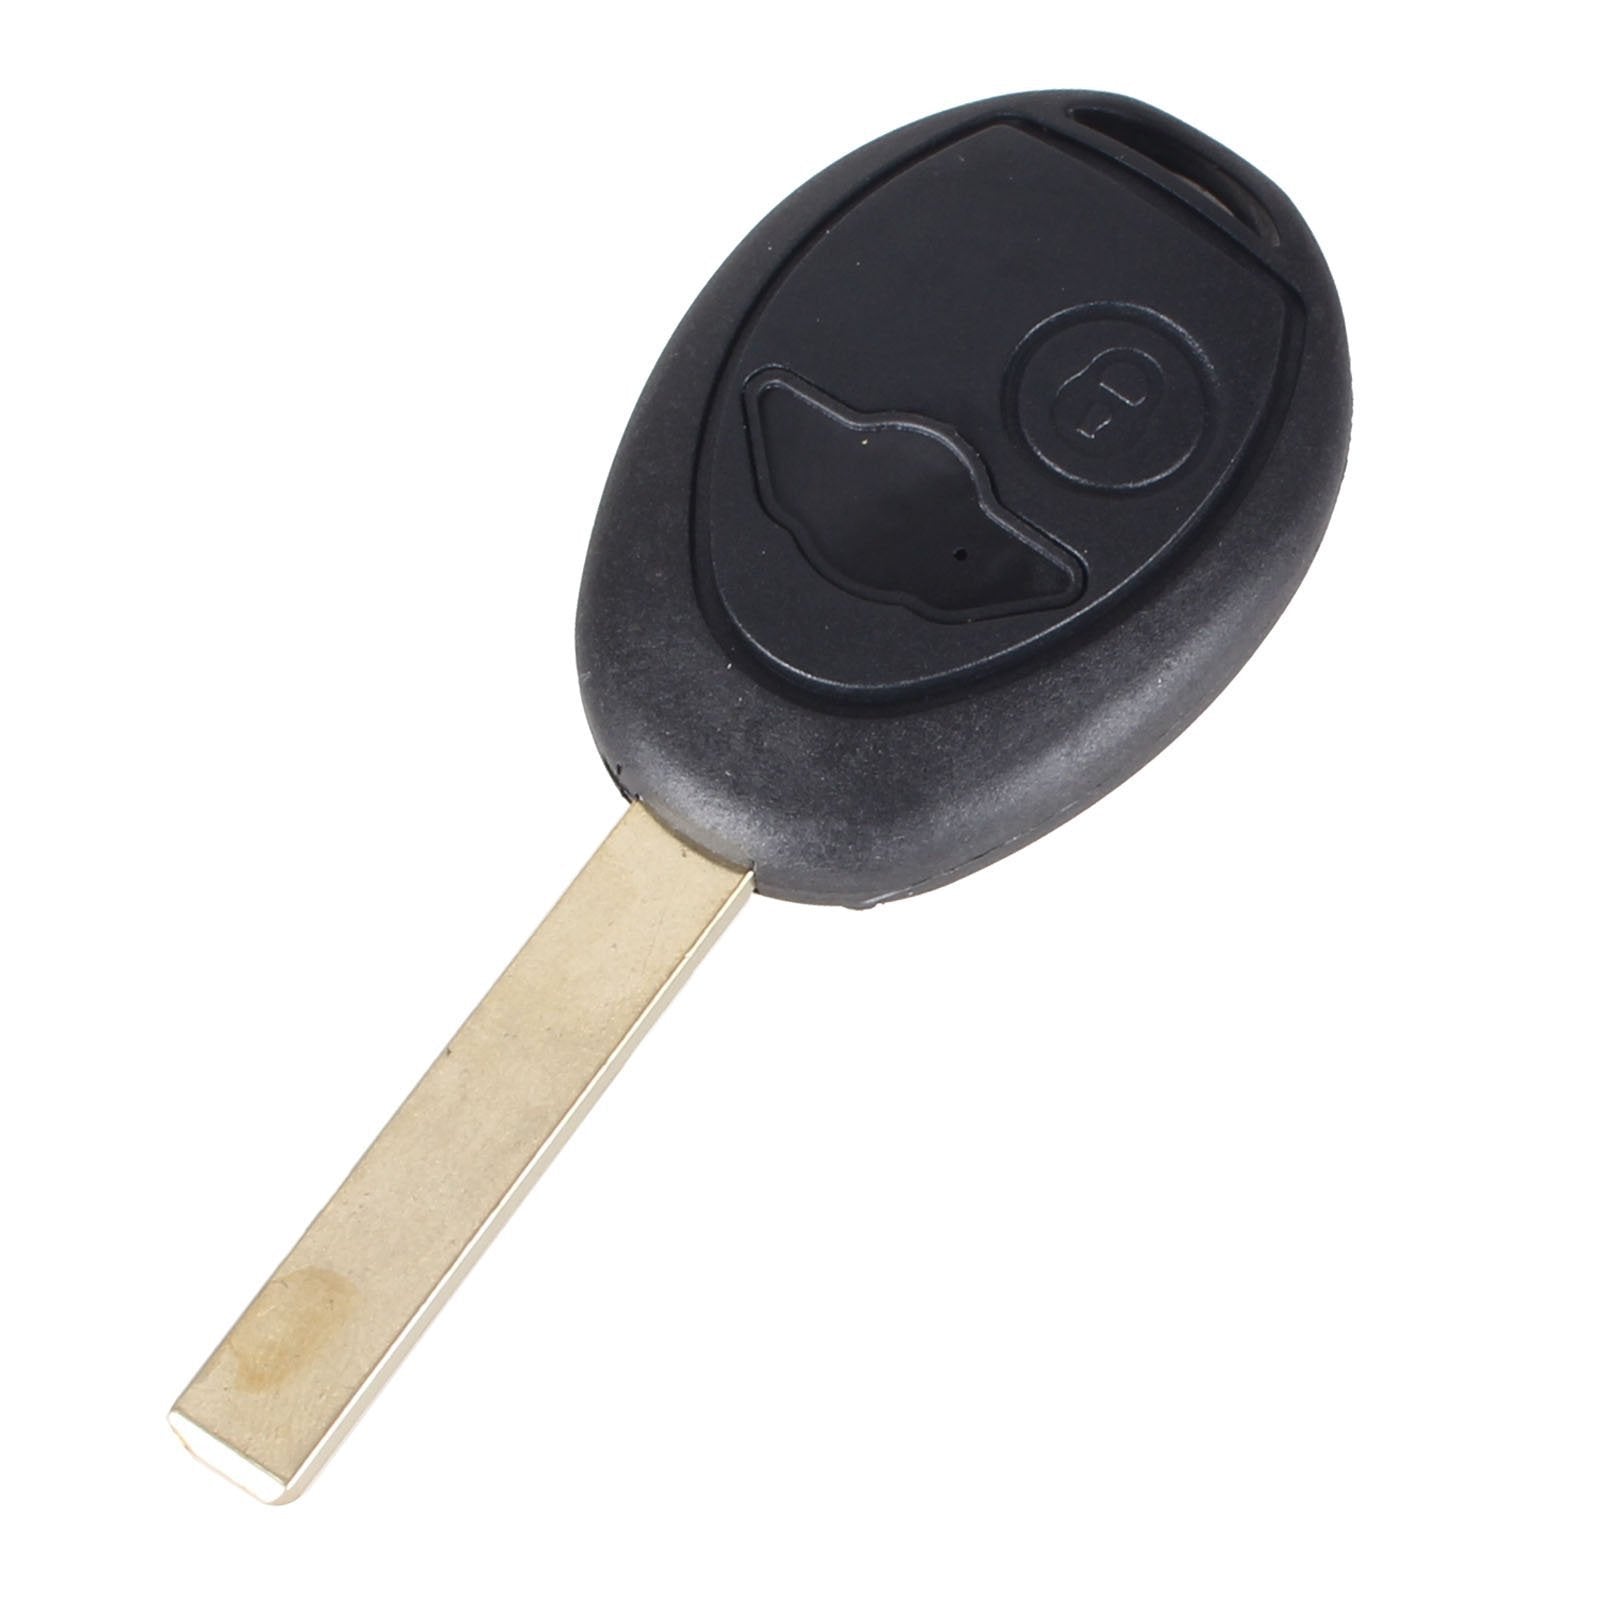 Fekete színű, 1 gombos Mini kulcsház nyers kulcsszárral.